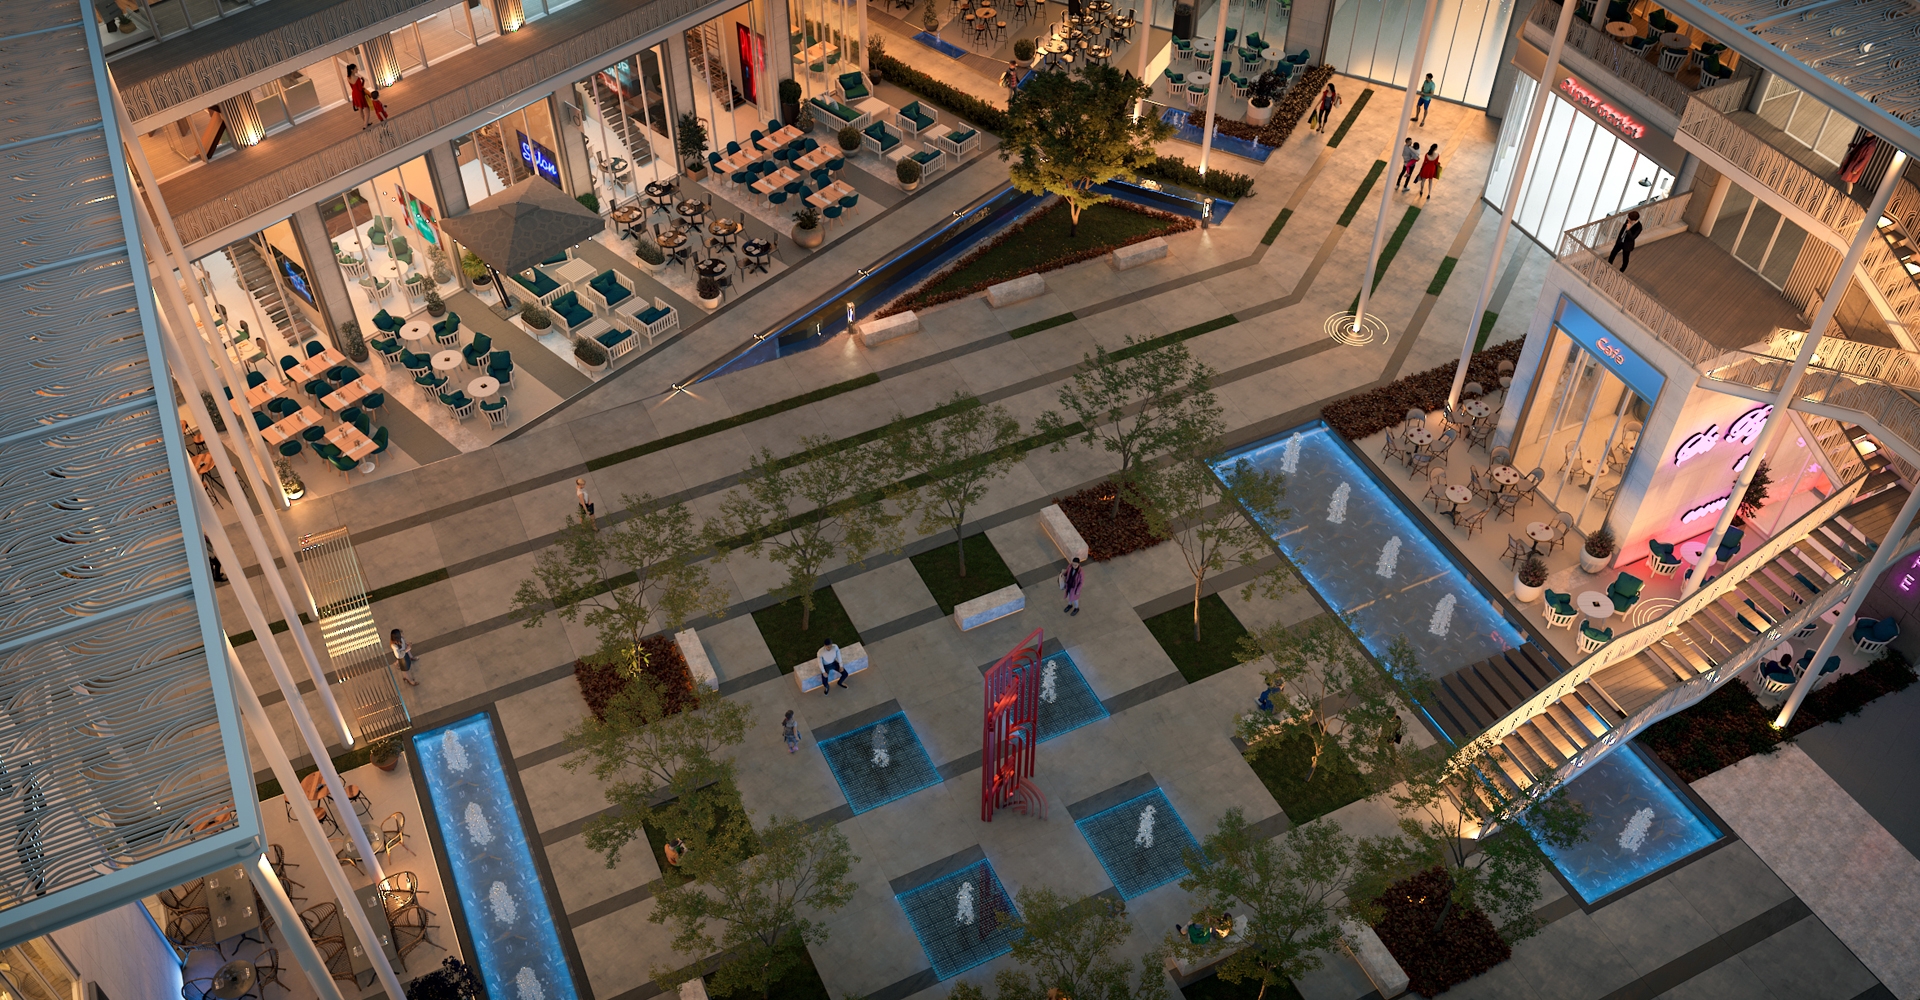 مول بوتانيكا هب ستريب العاصمة الإدارية الجديدة - Botanica Hub Strip Mall New Capitalتجاري - طبي